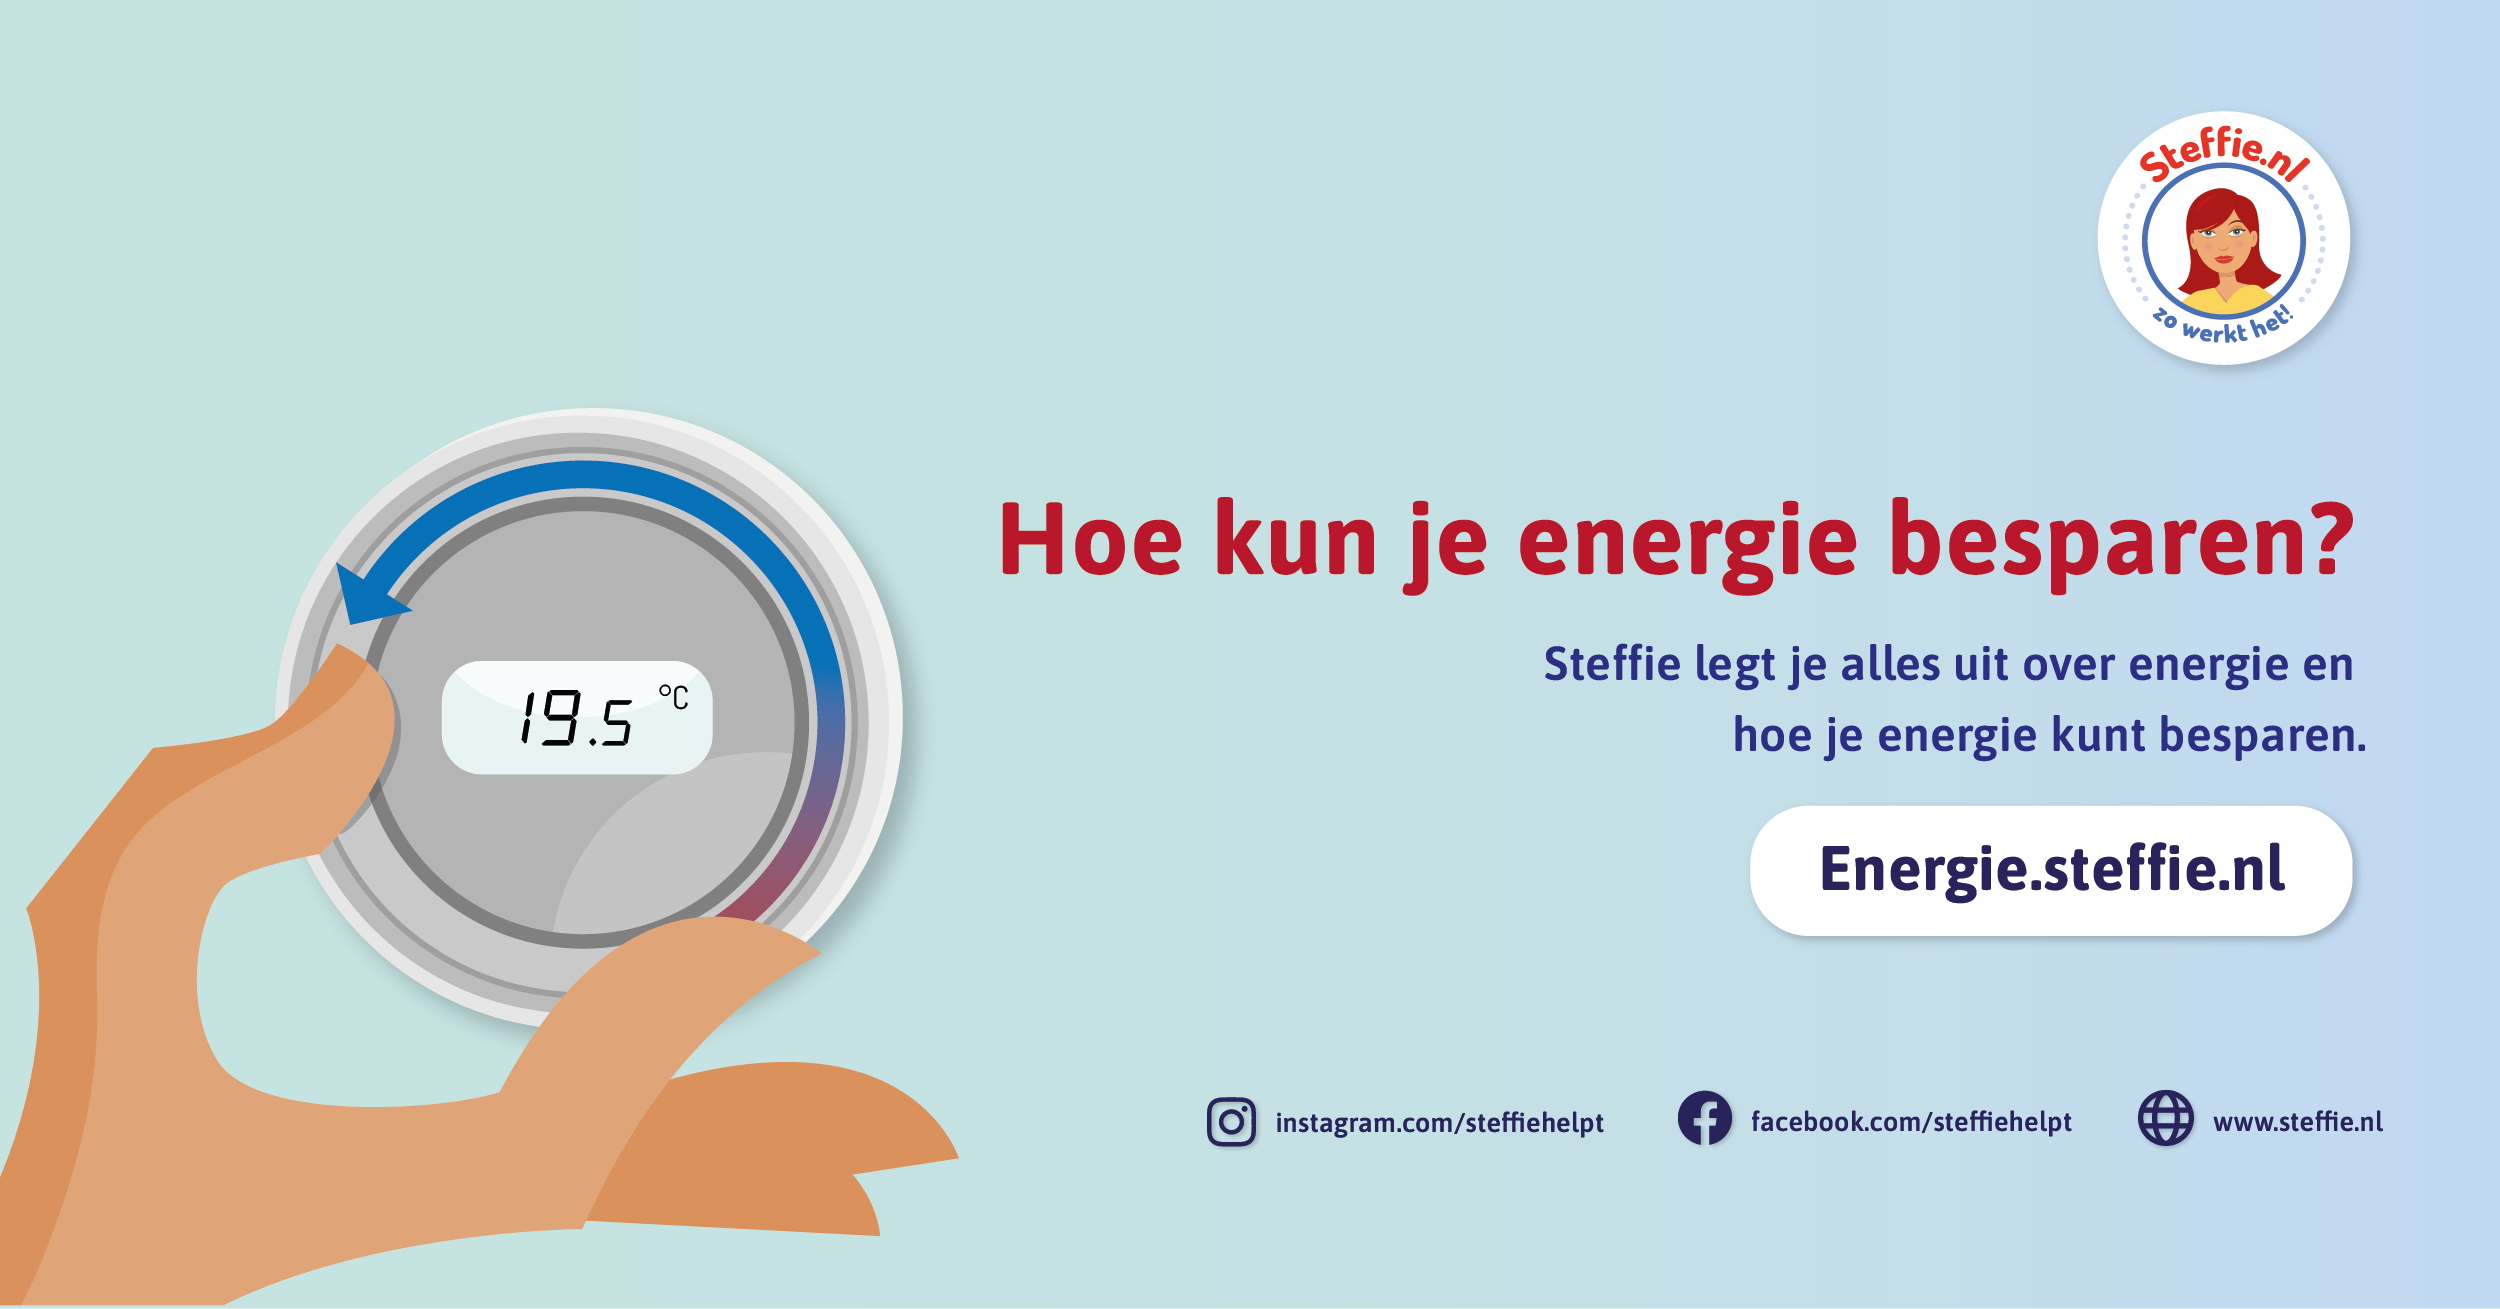 Mensen met een laag inkomen krijgen ongeveer 200 euro extra als tegemoetkoming om de stijgende energieprijzen op te vangen.